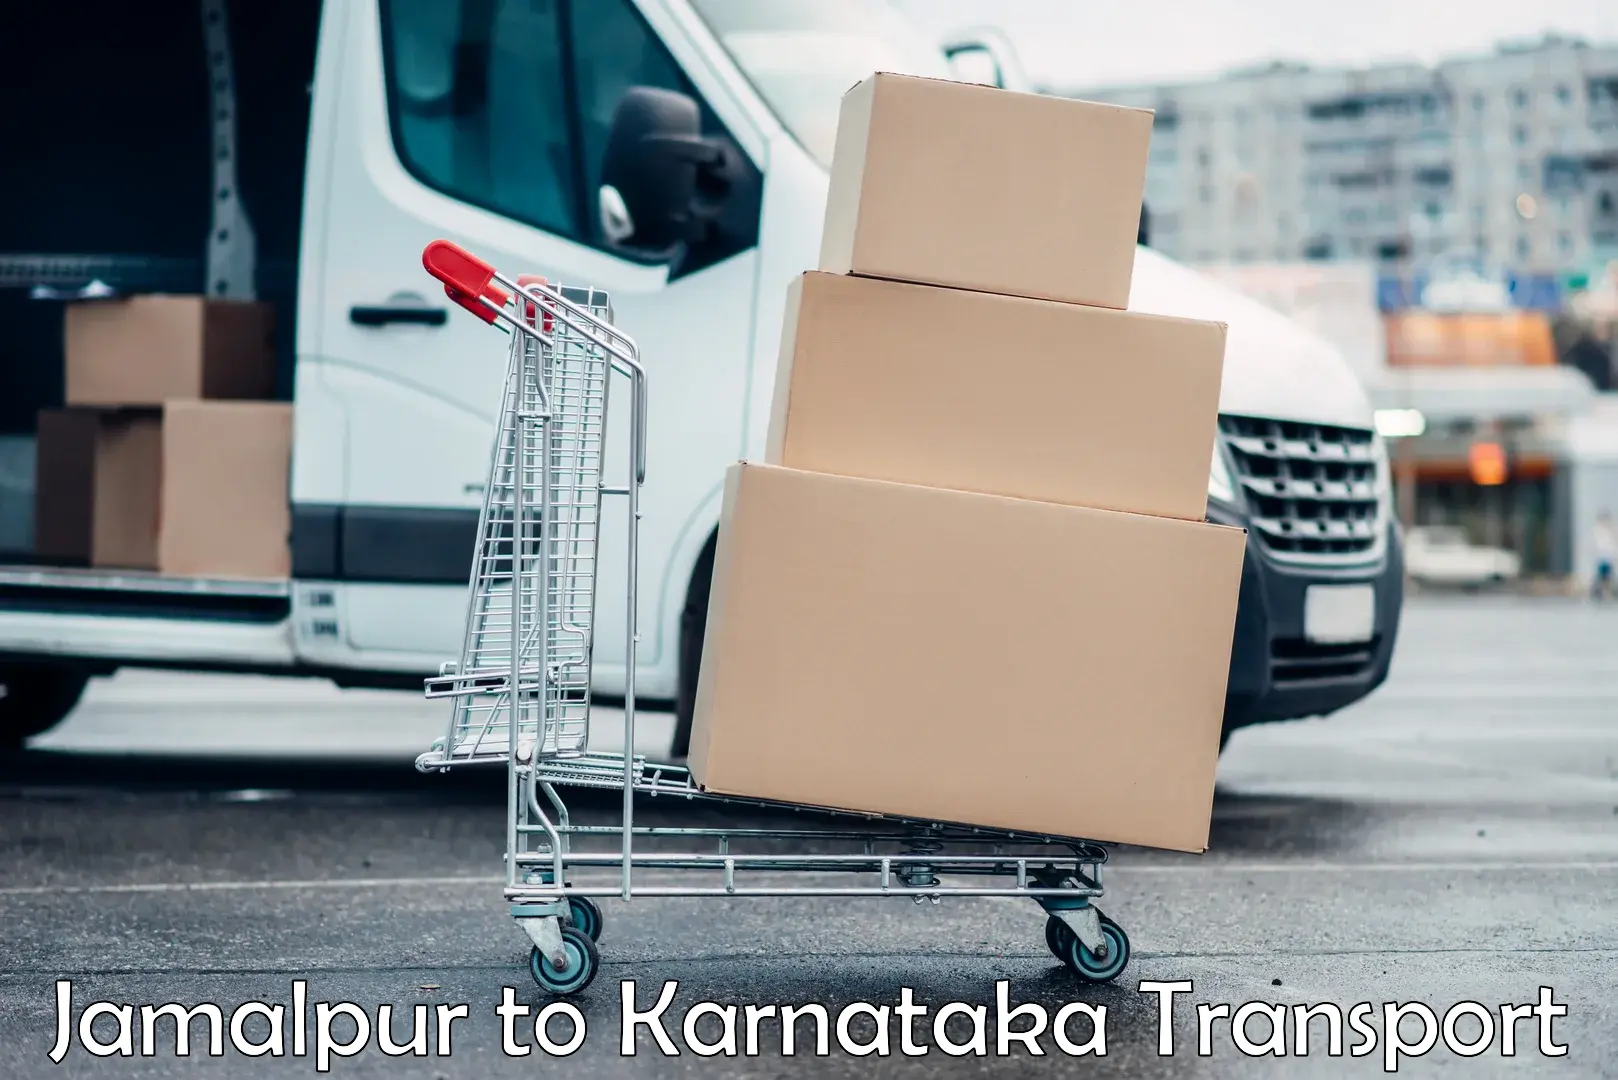 Commercial transport service Jamalpur to Khanapur Karnataka